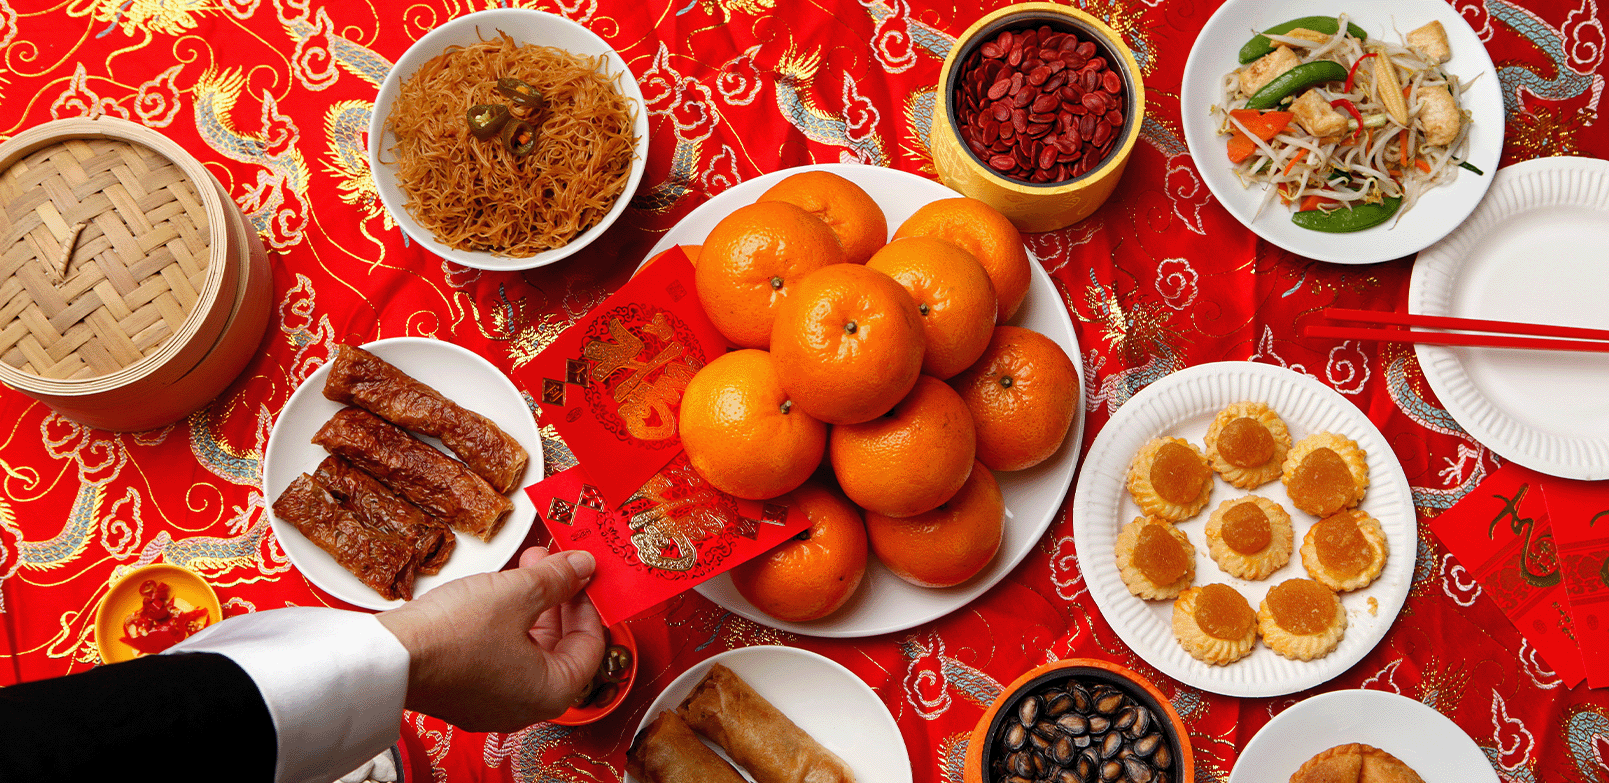 Tradisi makan bersama keluarga saat perayaan Imlek.